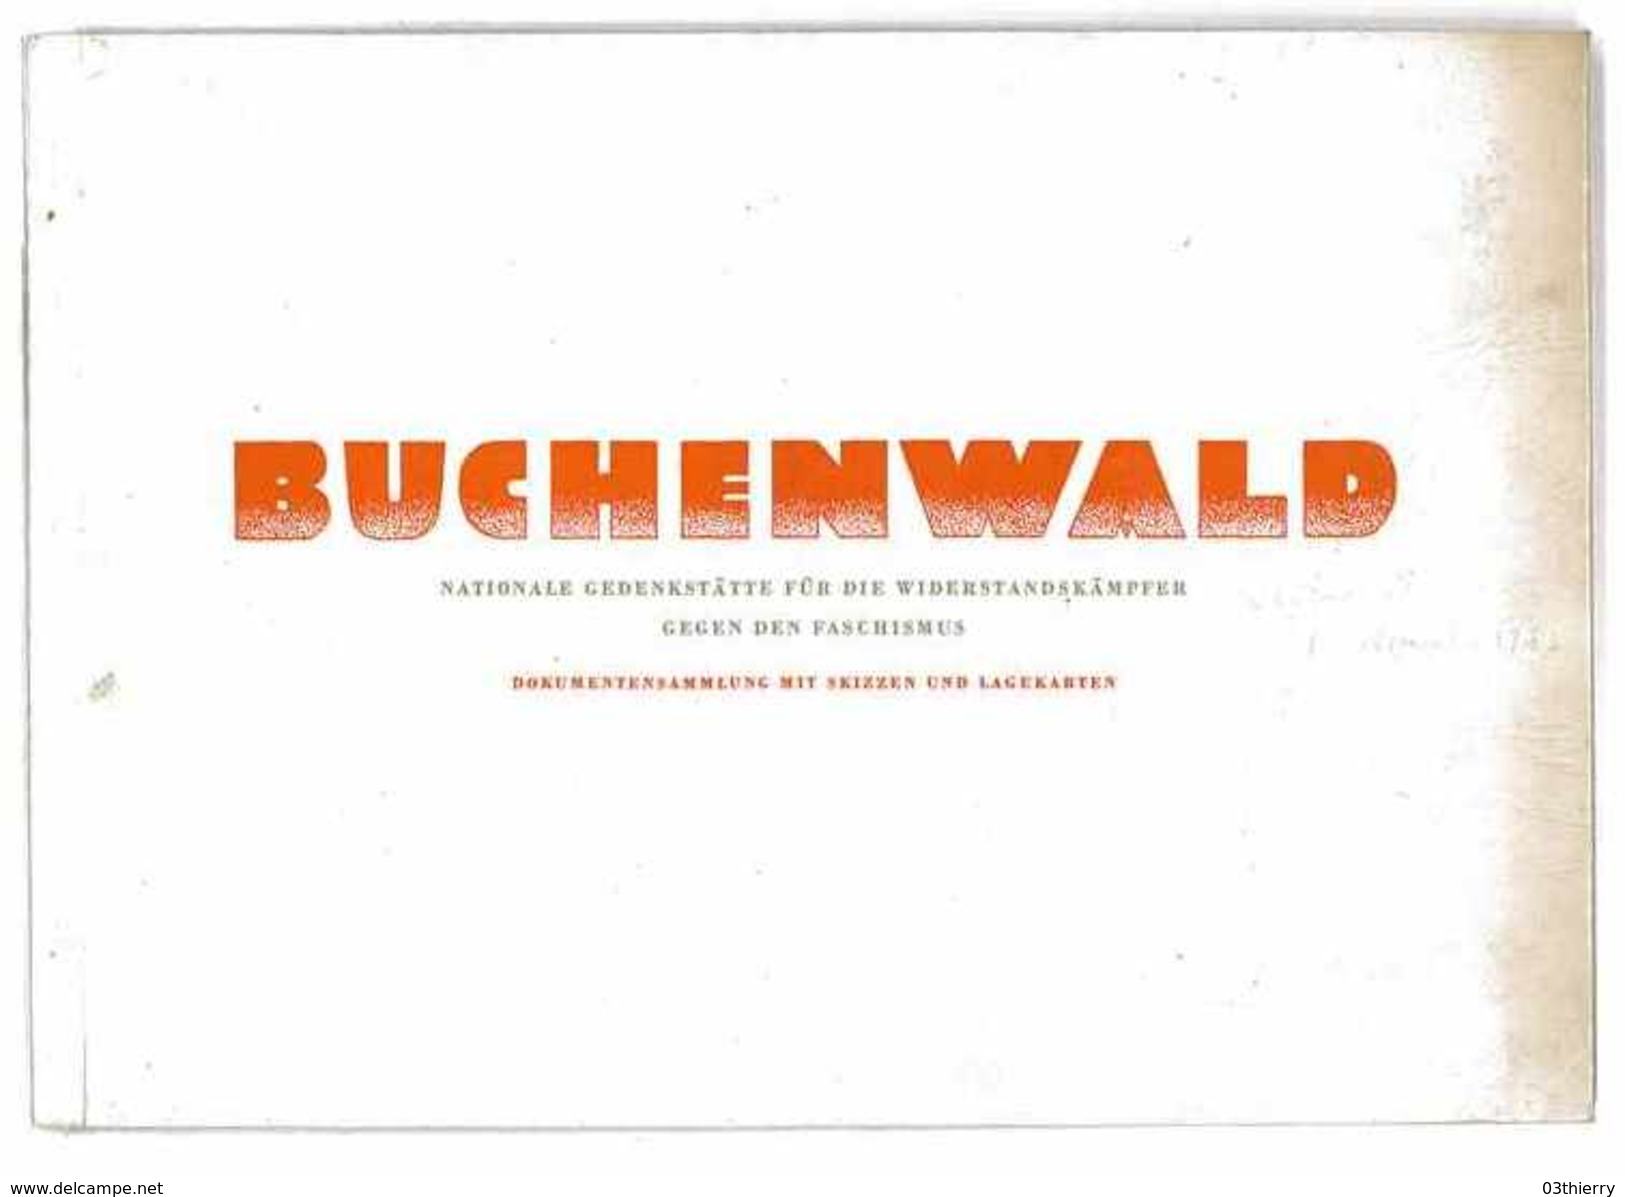 BUCHENWALD NATIONALE GEDENKSTATTE FUR DIE WIDERSTANDSKAMPFER GEGEN DEN FASCHISMUS 1949 - Biographien & Memoiren